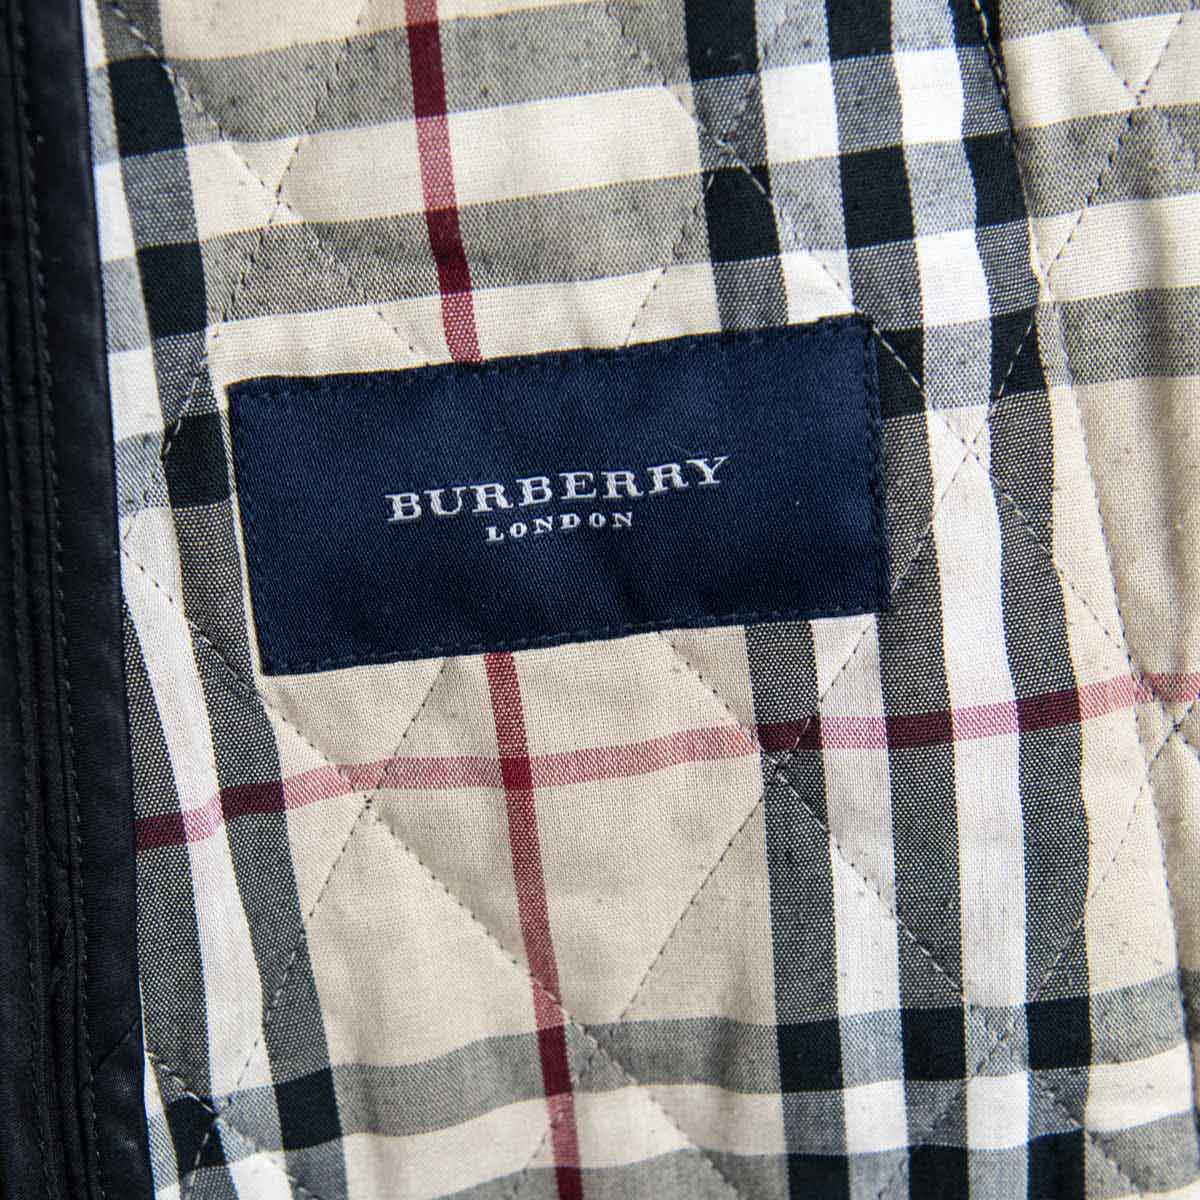 burberry jacket london